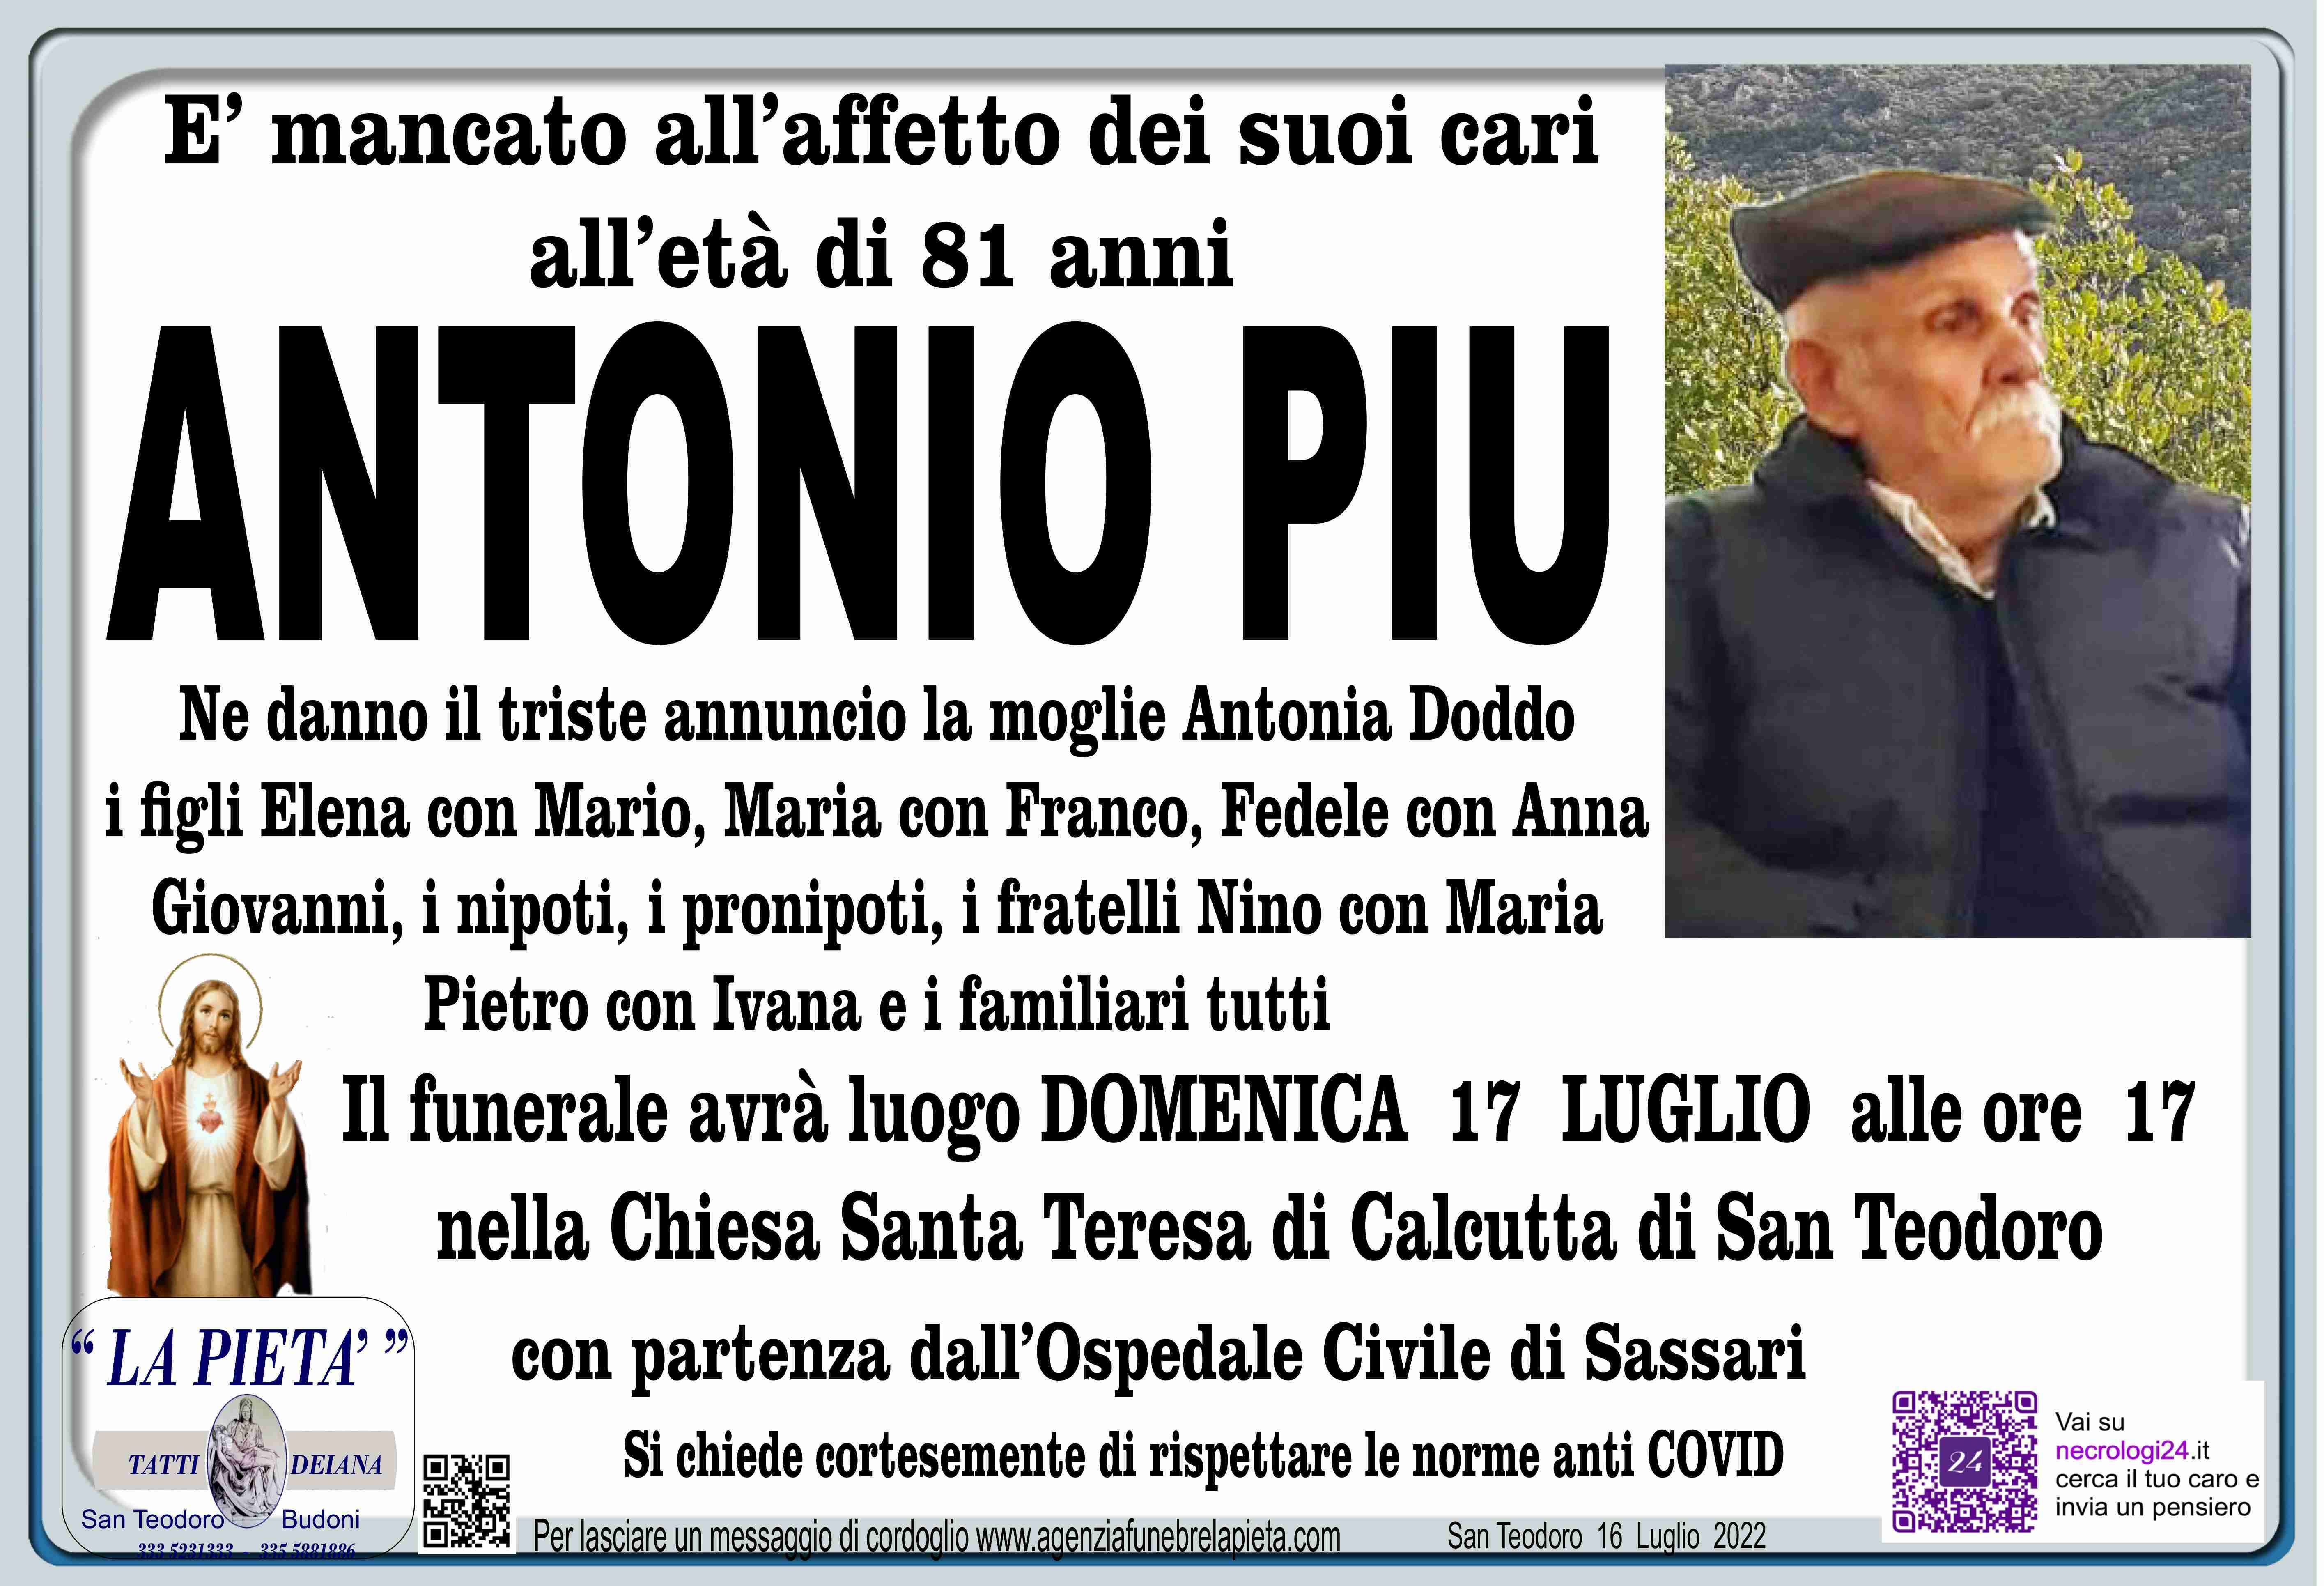 Antonio Piu